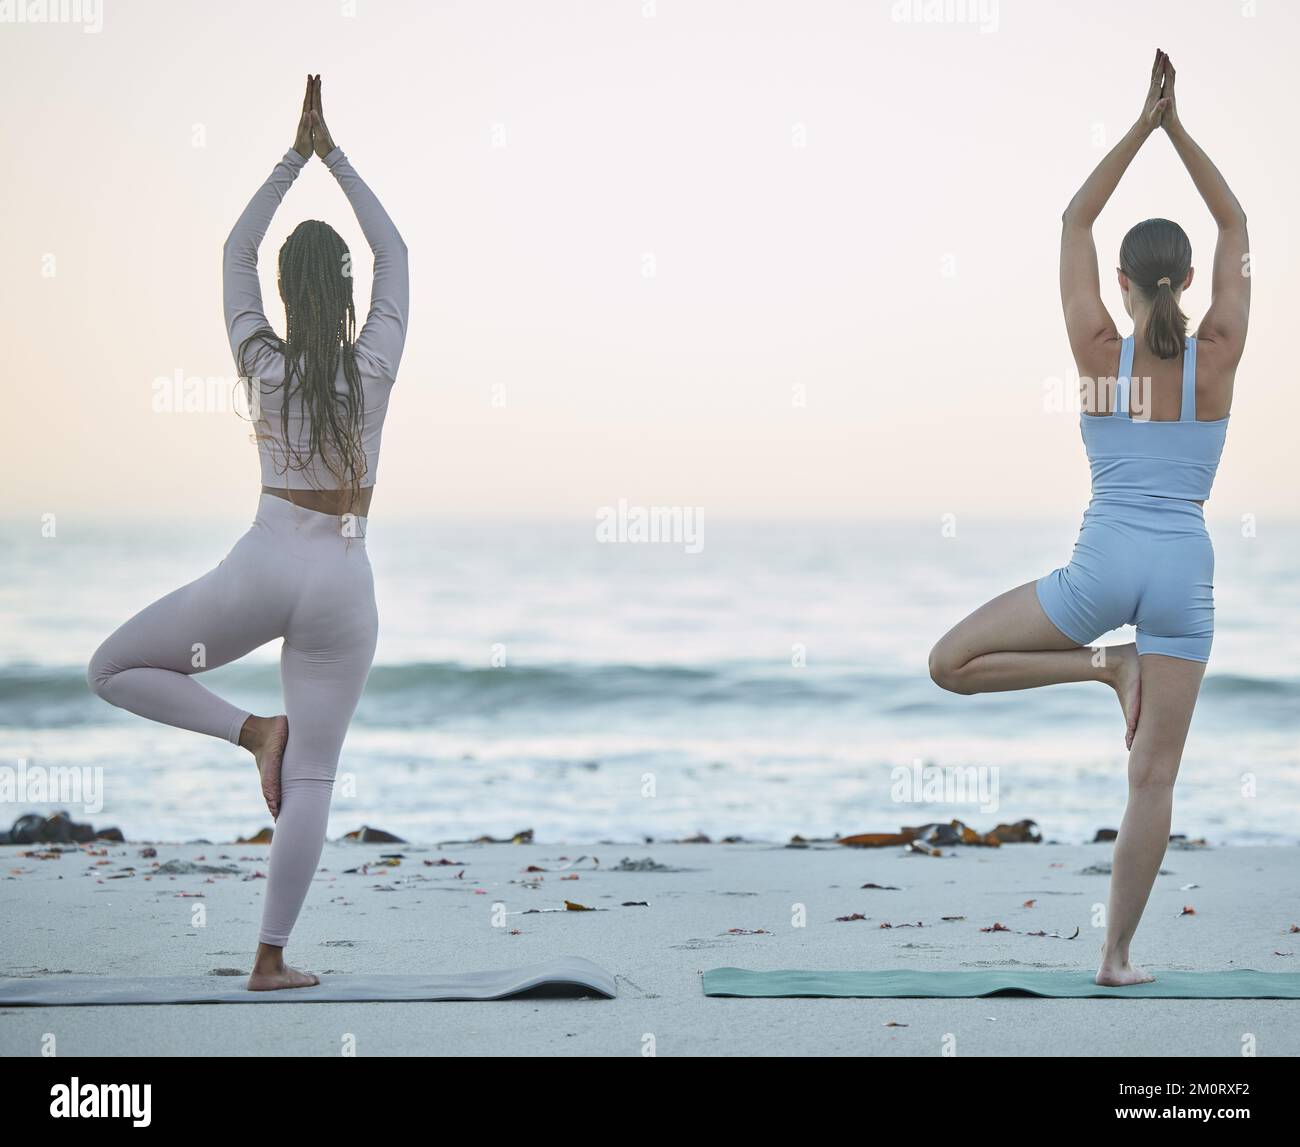 Yoga, amis de remise en forme et entraînement de plage avec pose d'arbre en plein air dans la nature pour le zen, la paix et l'équilibre avec la pleine conscience de la méditation. Les femmes ensemble Banque D'Images